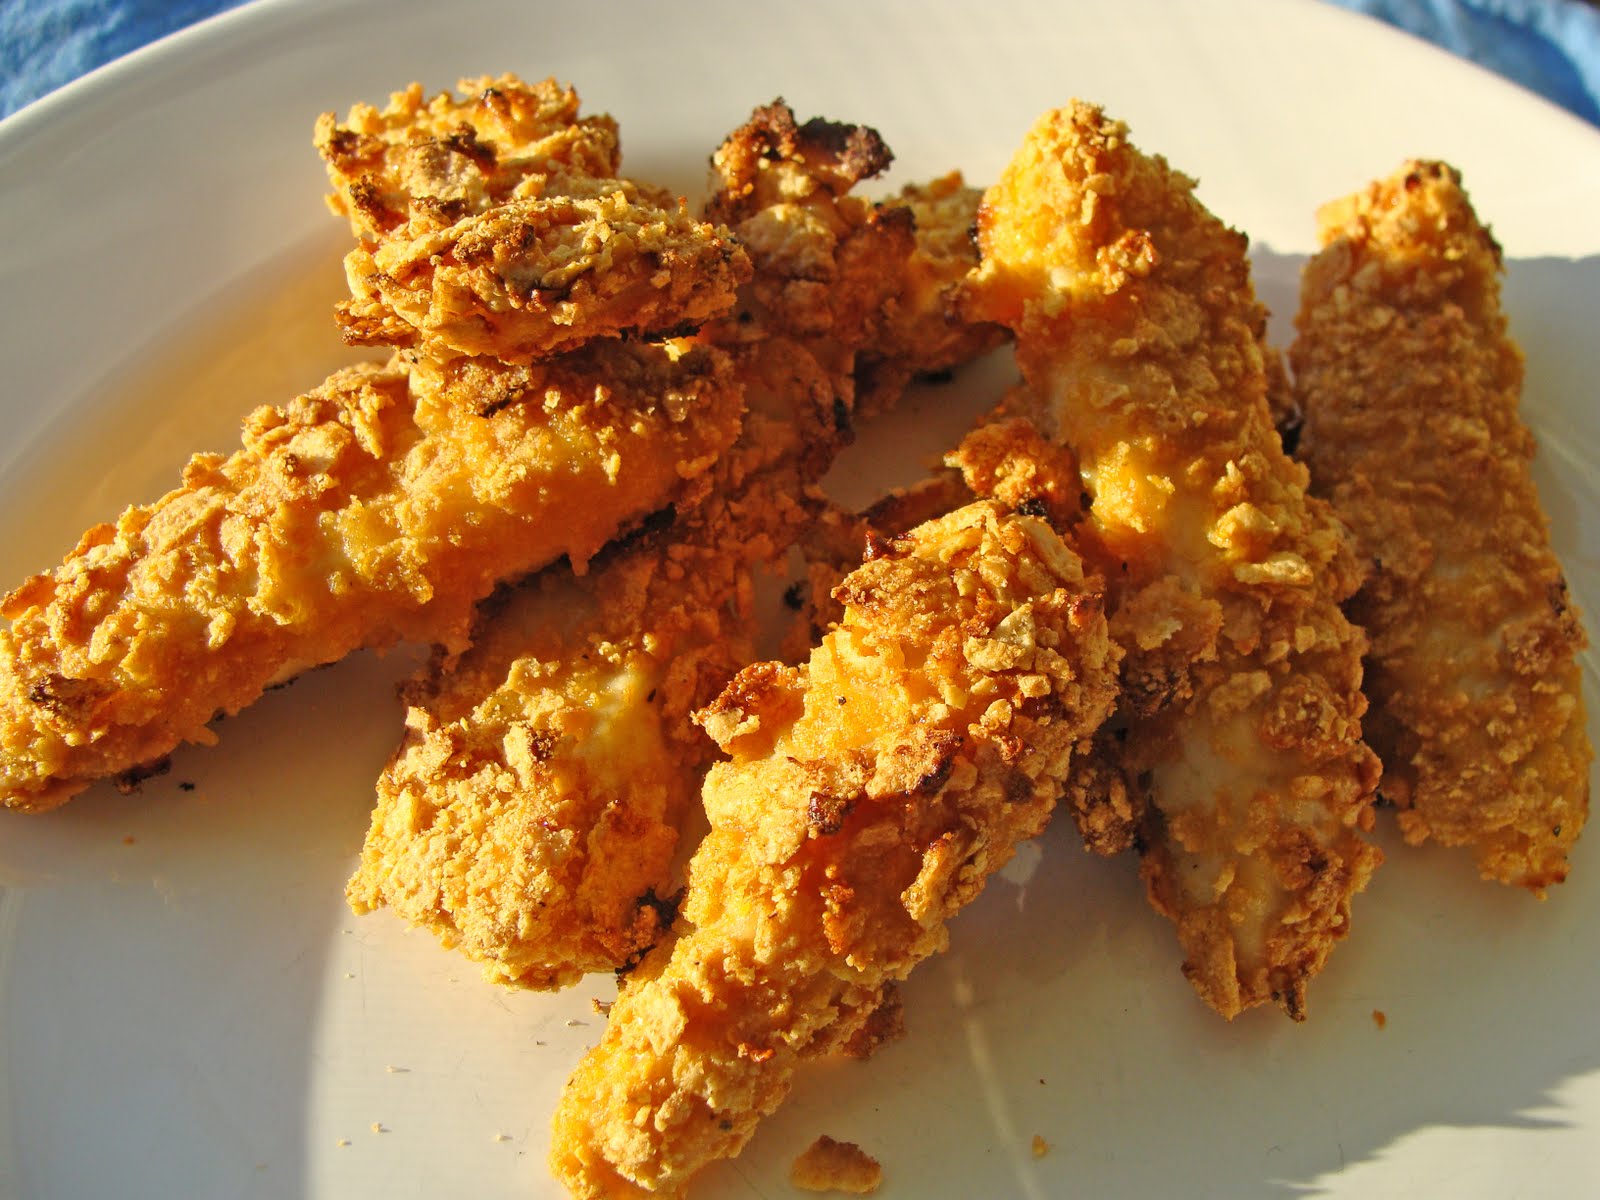 Tummy Temptations: Crunchy Chicken Fingers